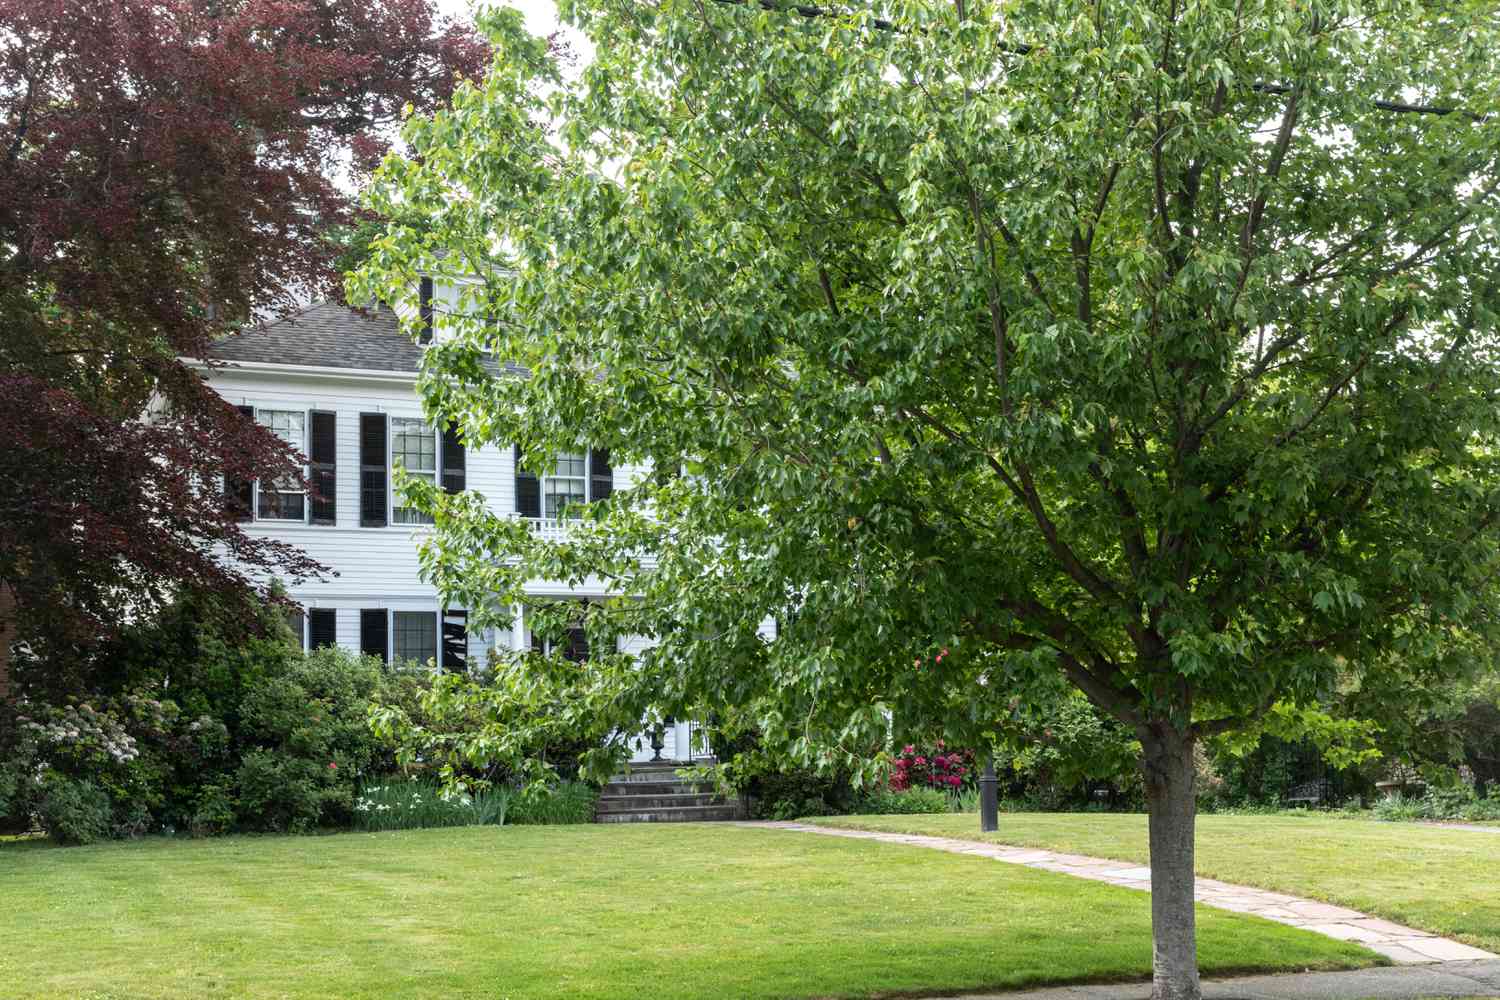 Árbol delante de una gran casa blanca con césped delantero extendido